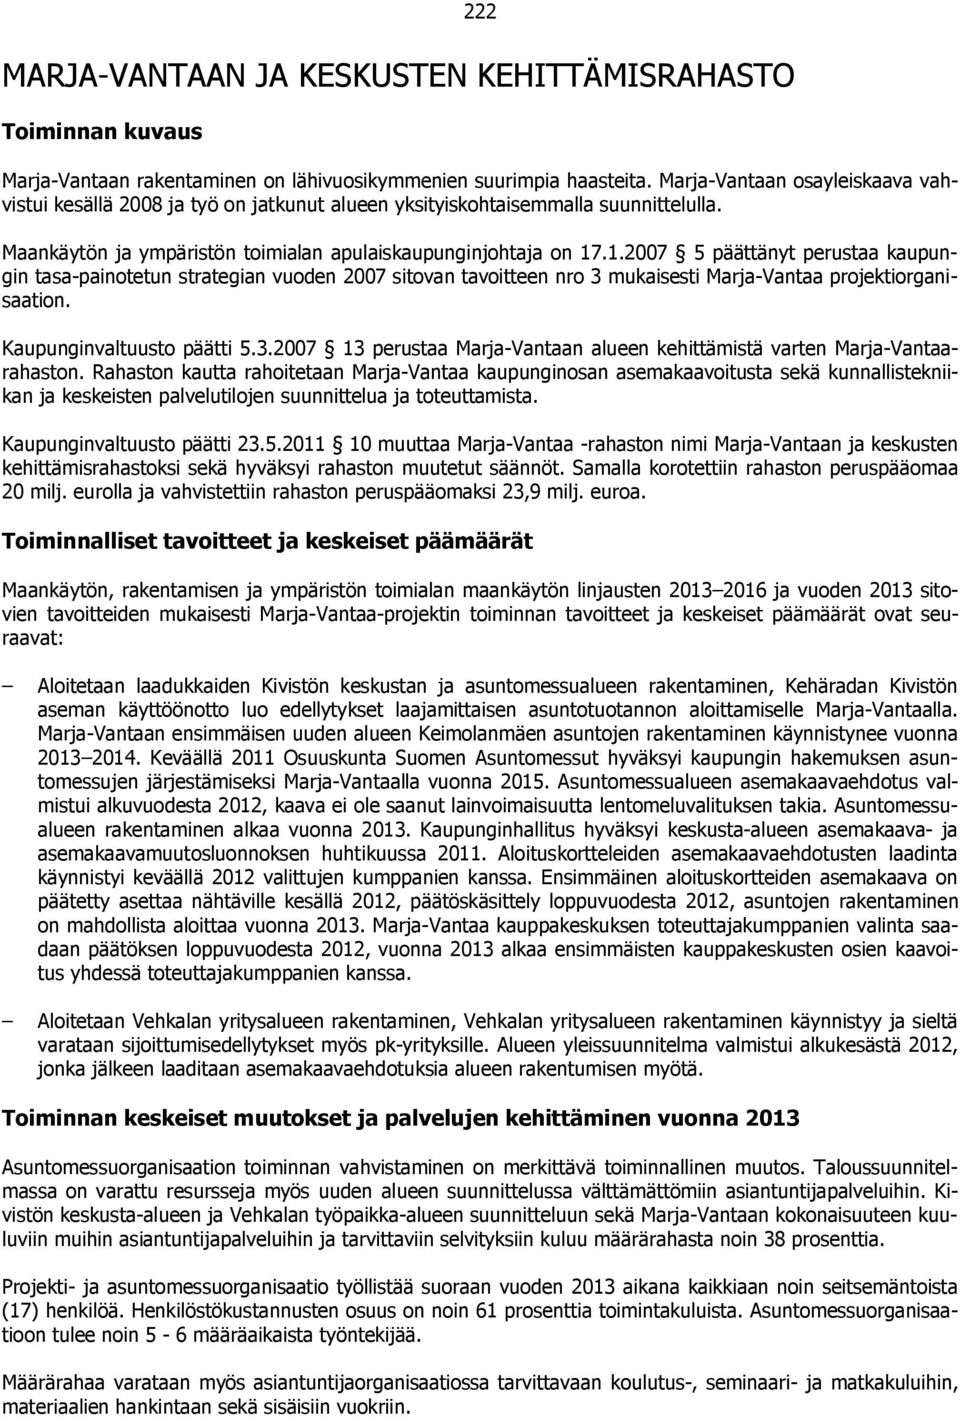 .1.2007 5 päättänyt perustaa kaupungin tasa-painotetun strategian vuoden 2007 sitovan tavoitteen nro 3 mukaisesti Marja-Vantaa projektiorganisaation. Kaupunginvaltuusto päätti 5.3.2007 13 perustaa Marja-Vantaan alueen kehittämistä varten Marja-Vantaarahaston.